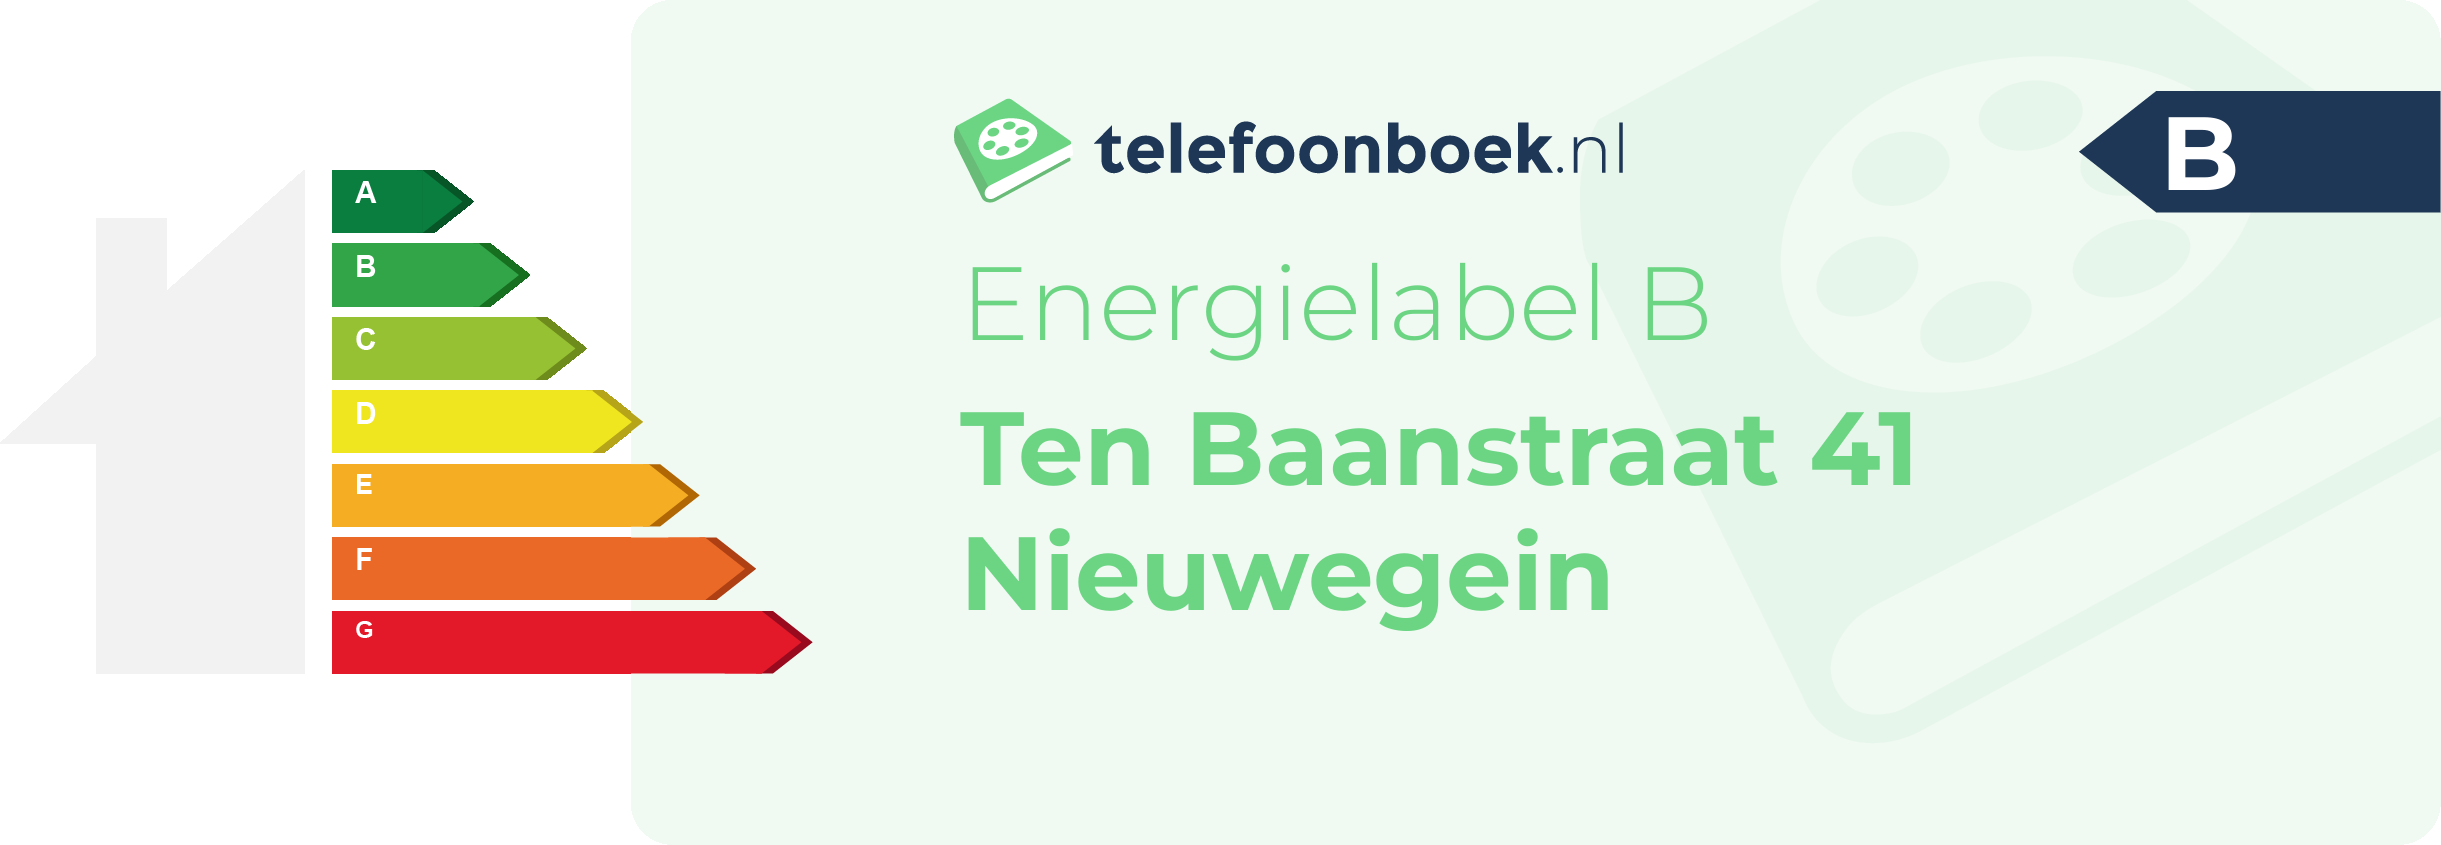 Energielabel Ten Baanstraat 41 Nieuwegein